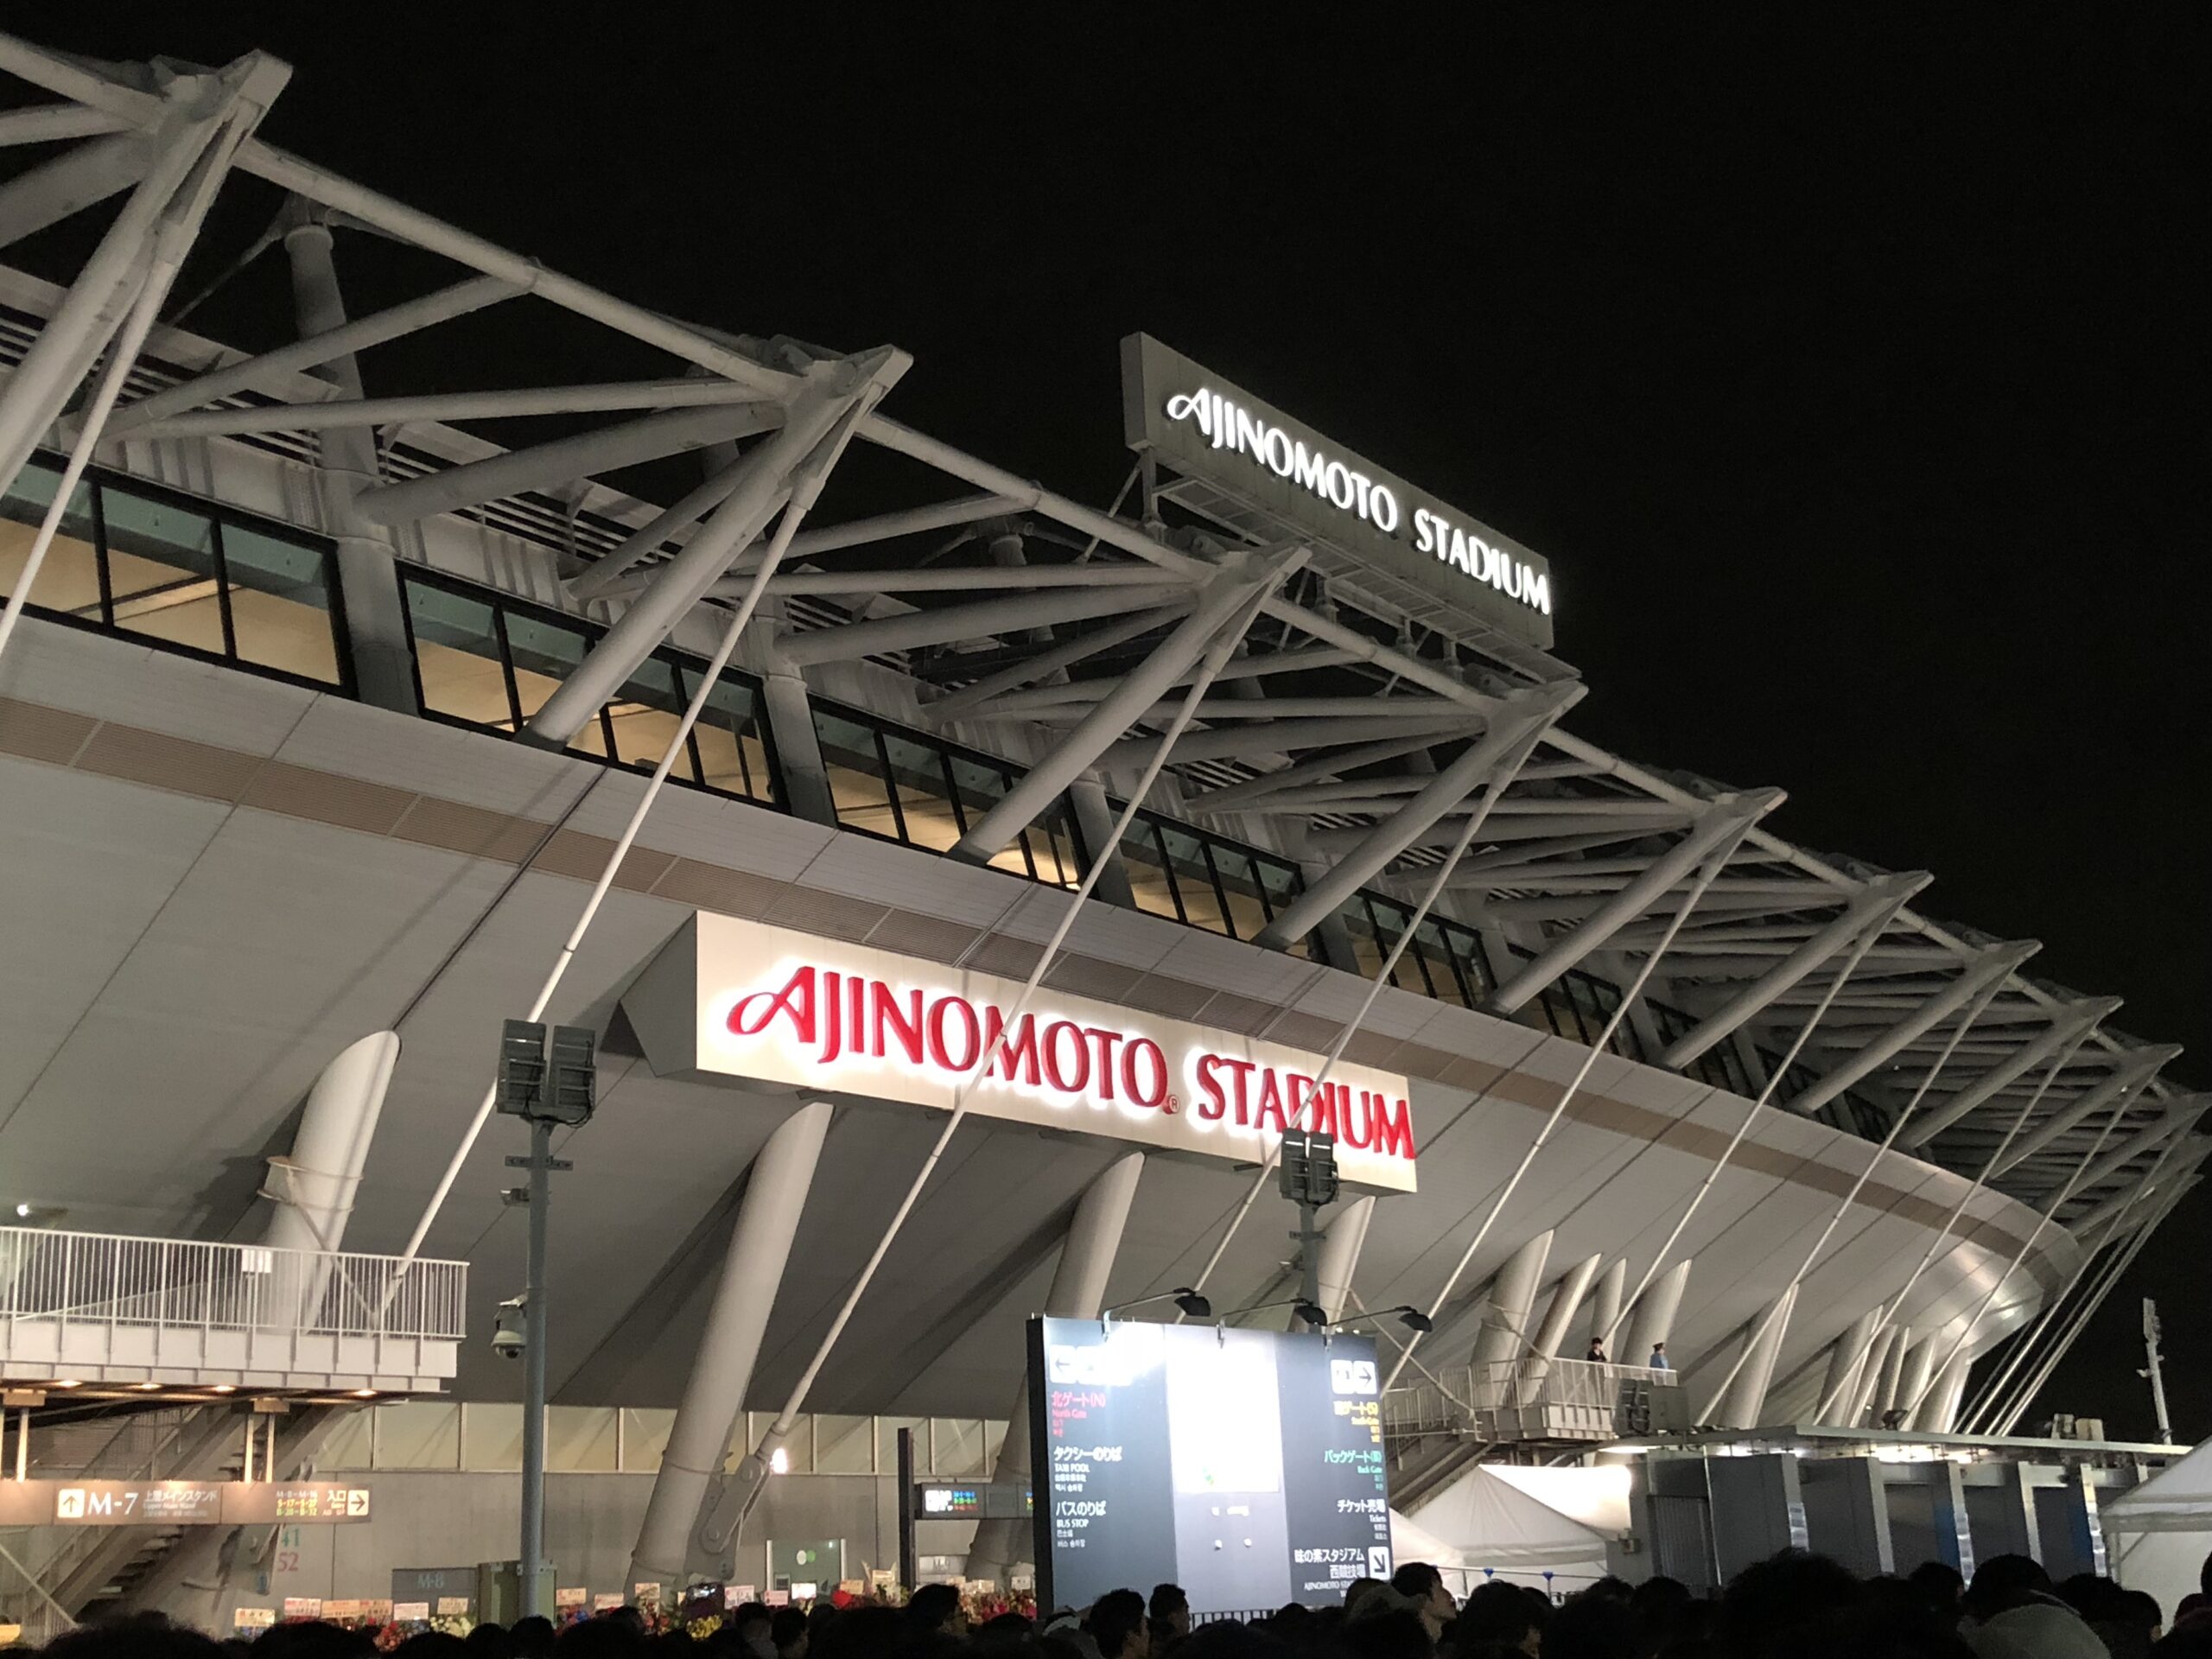 味の素スタジアムの夜の外観写真